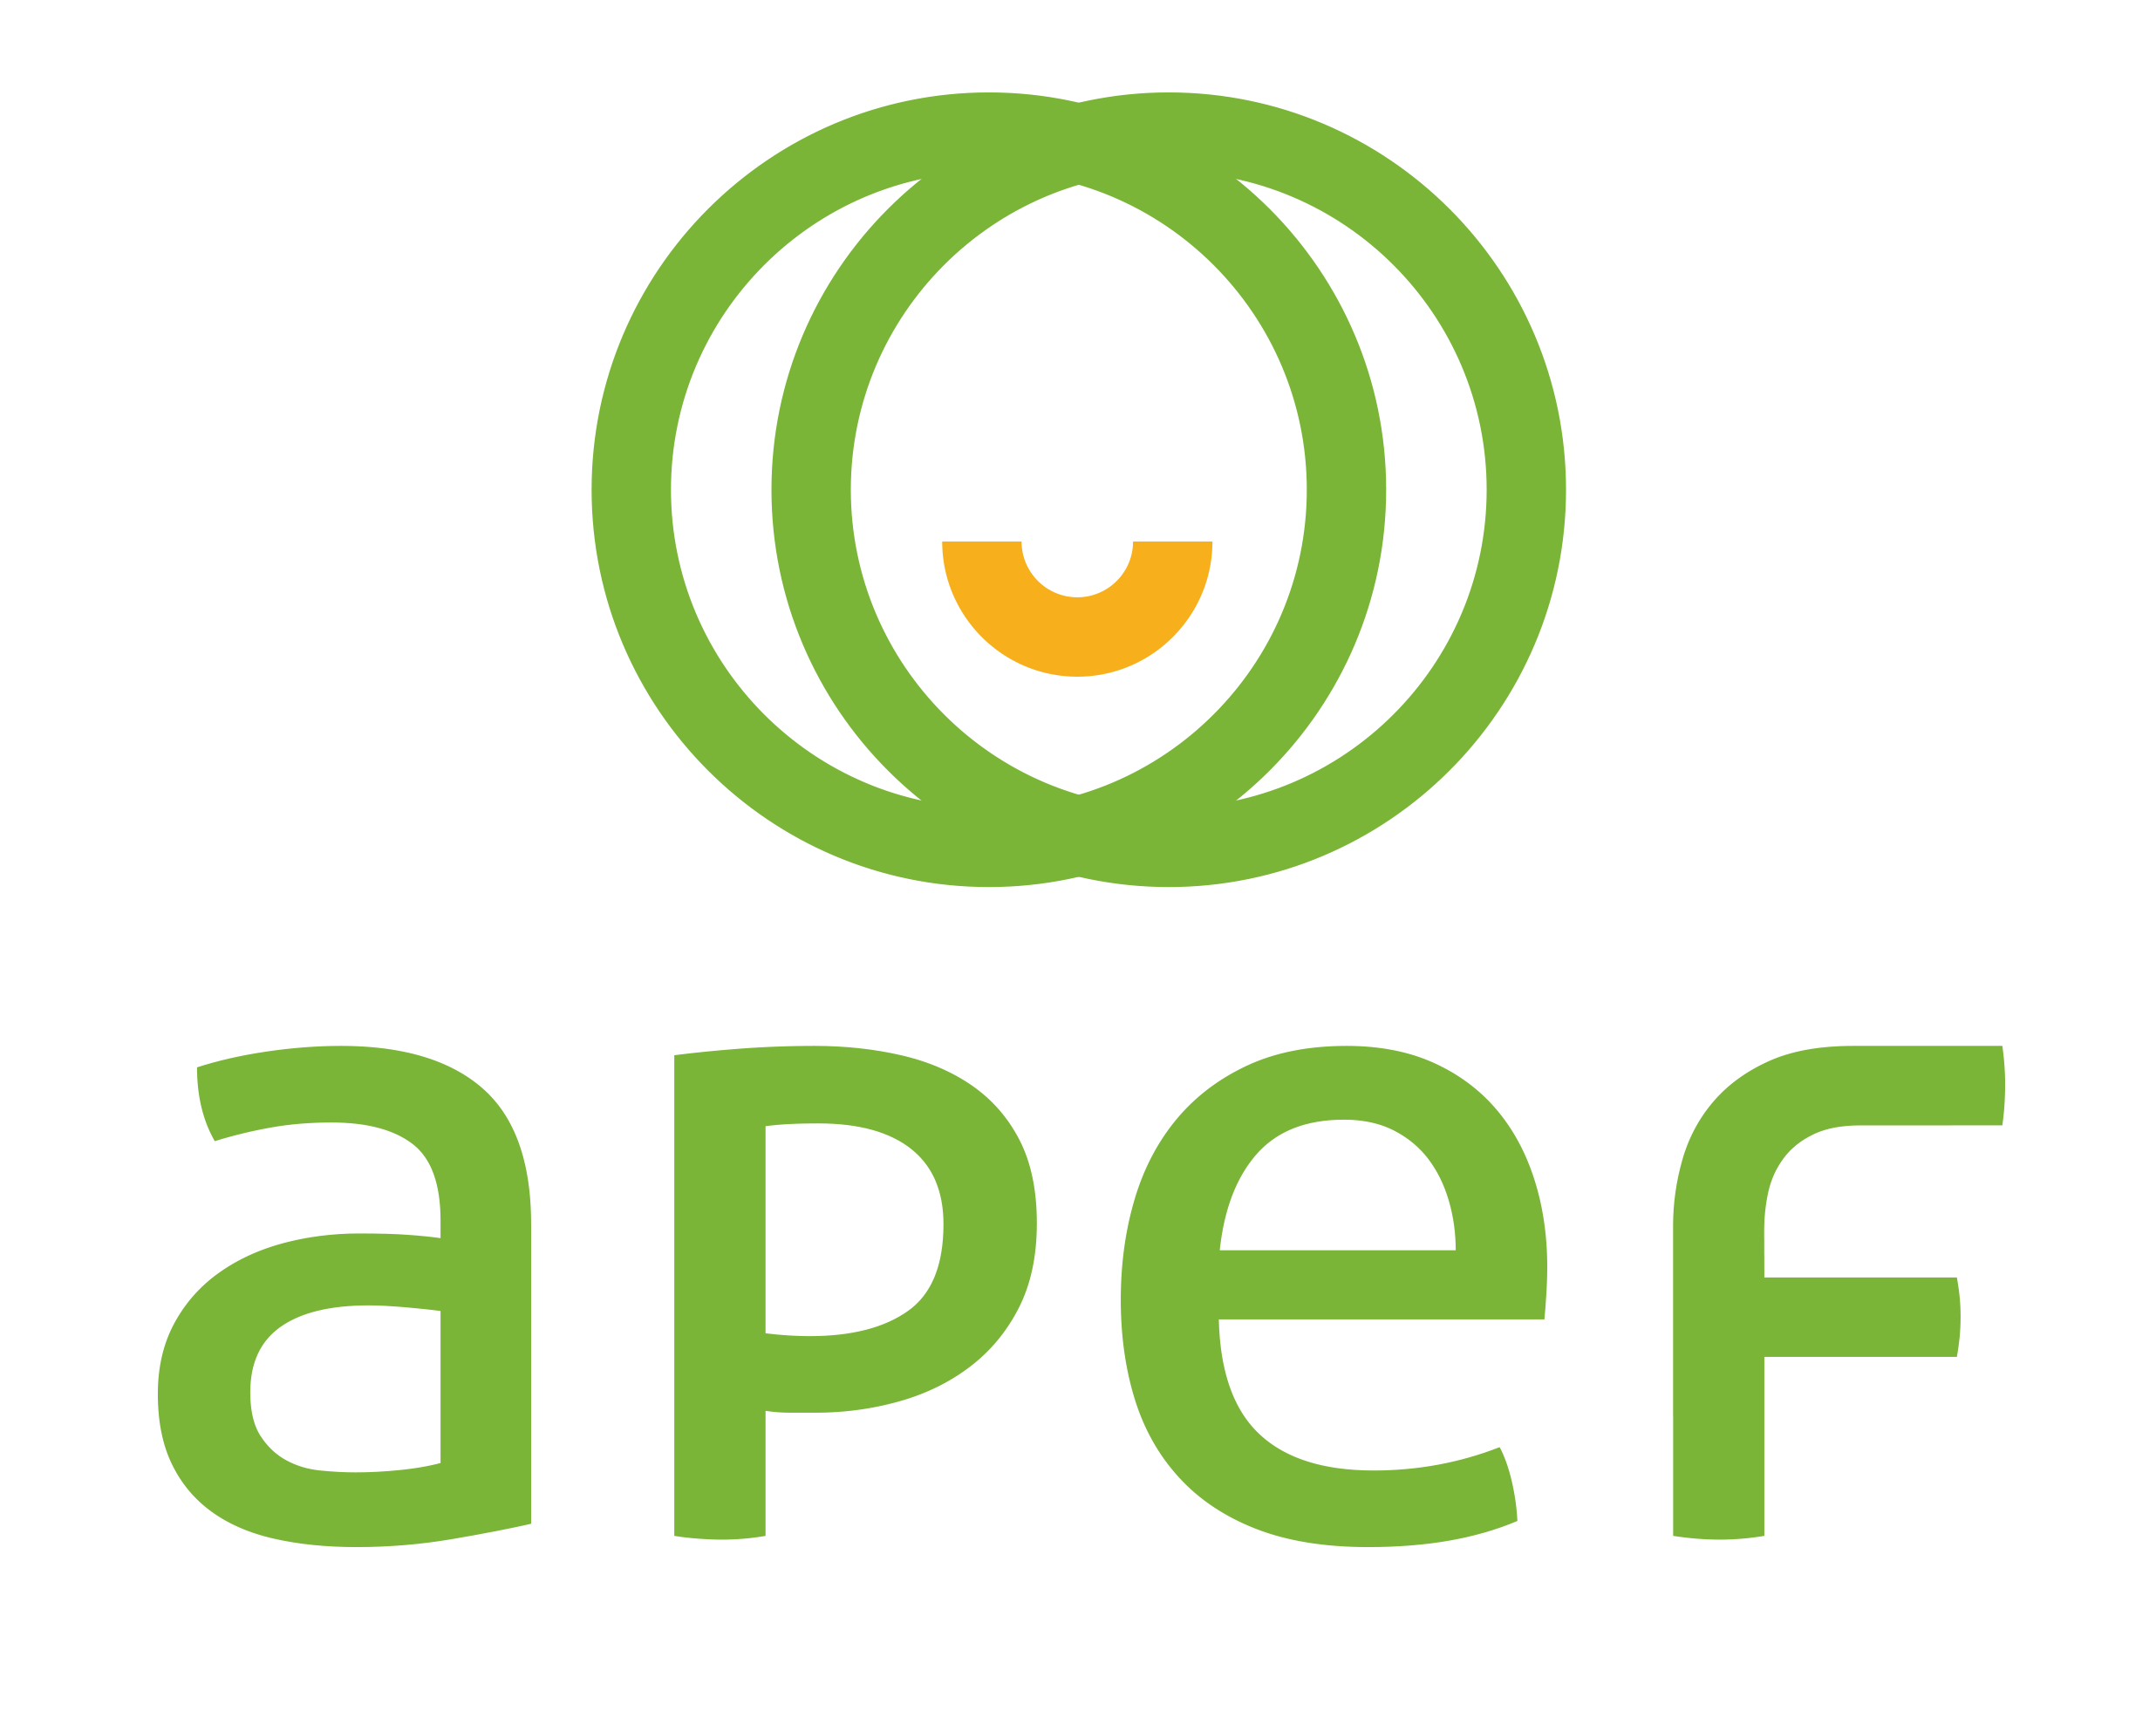 logo-apef